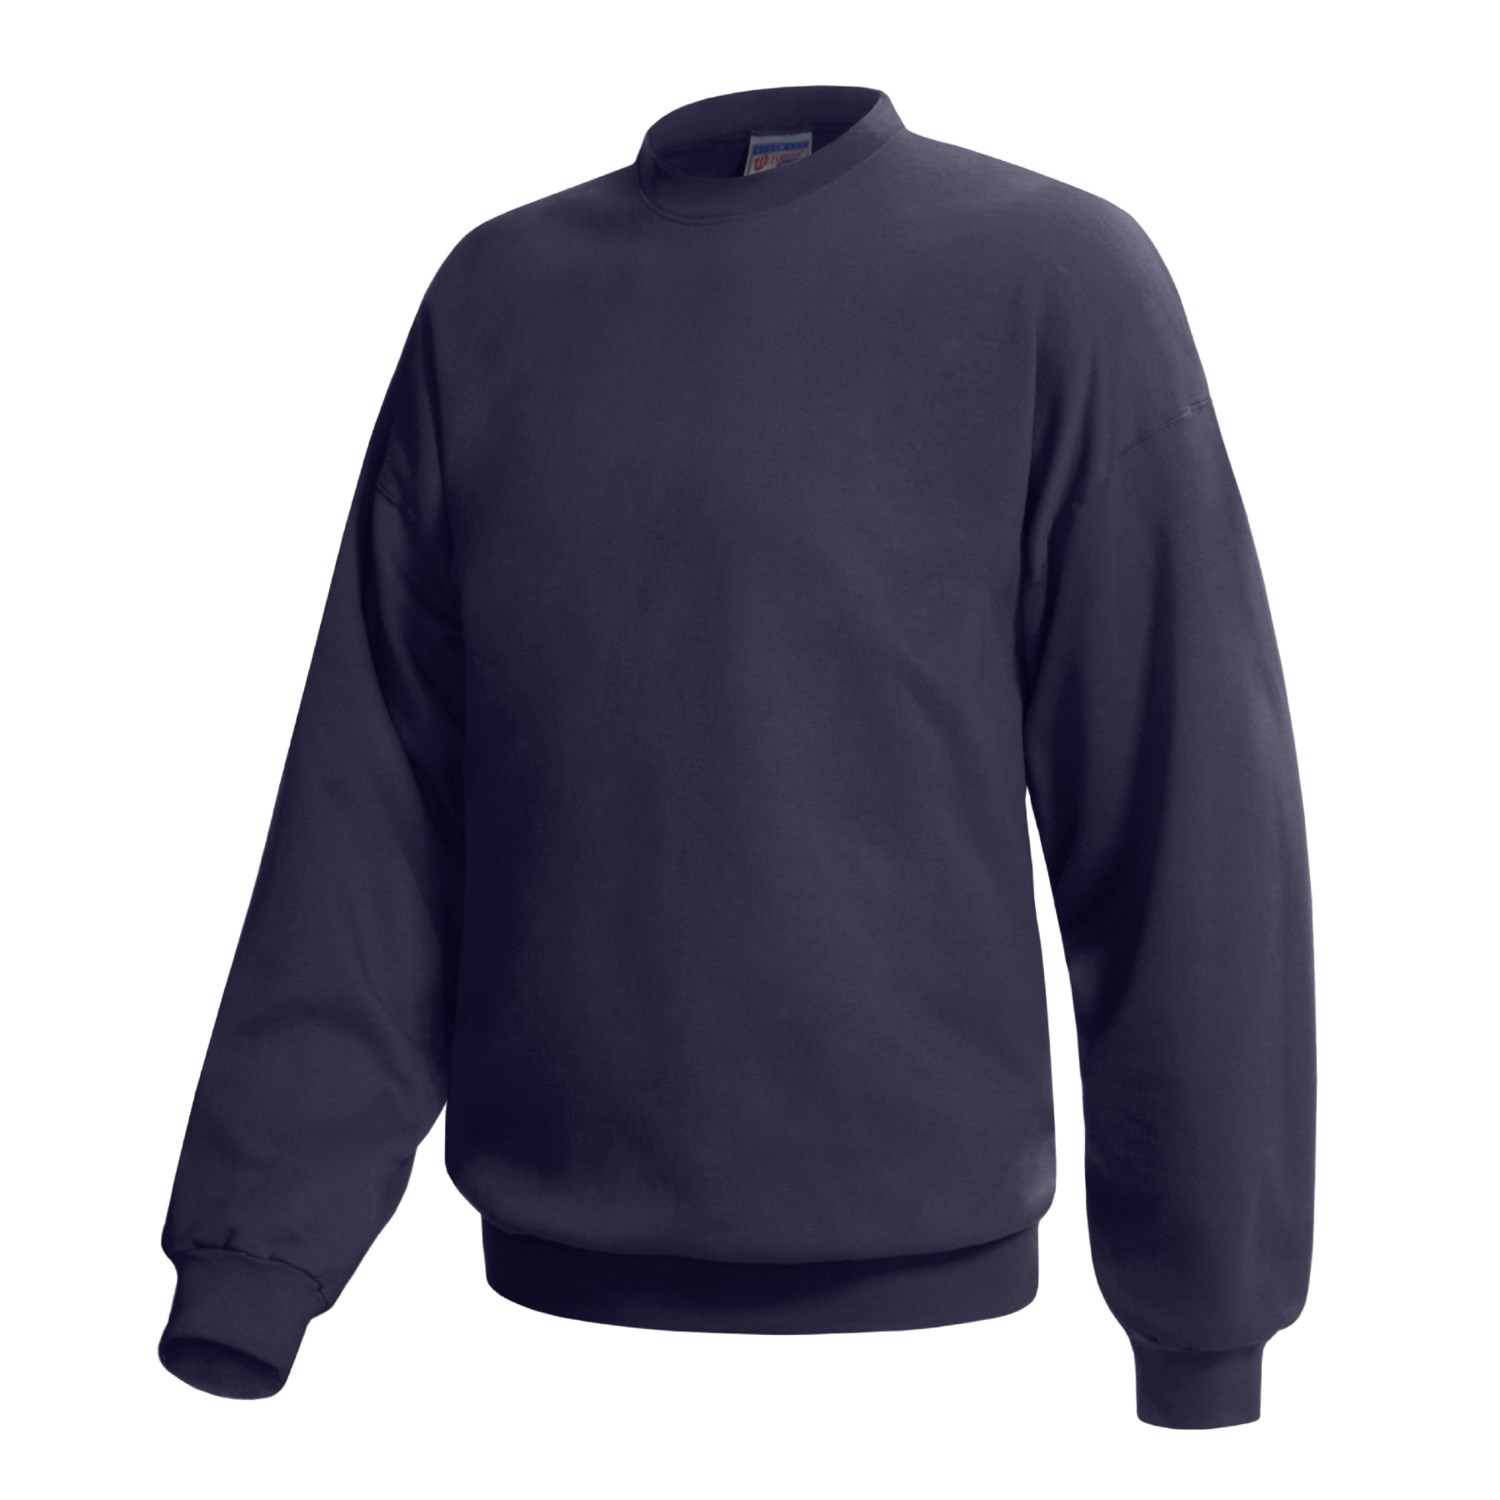 Hanes XP Crew Neck Sweatshirt (For Men and Women) 57579 - Save 36%